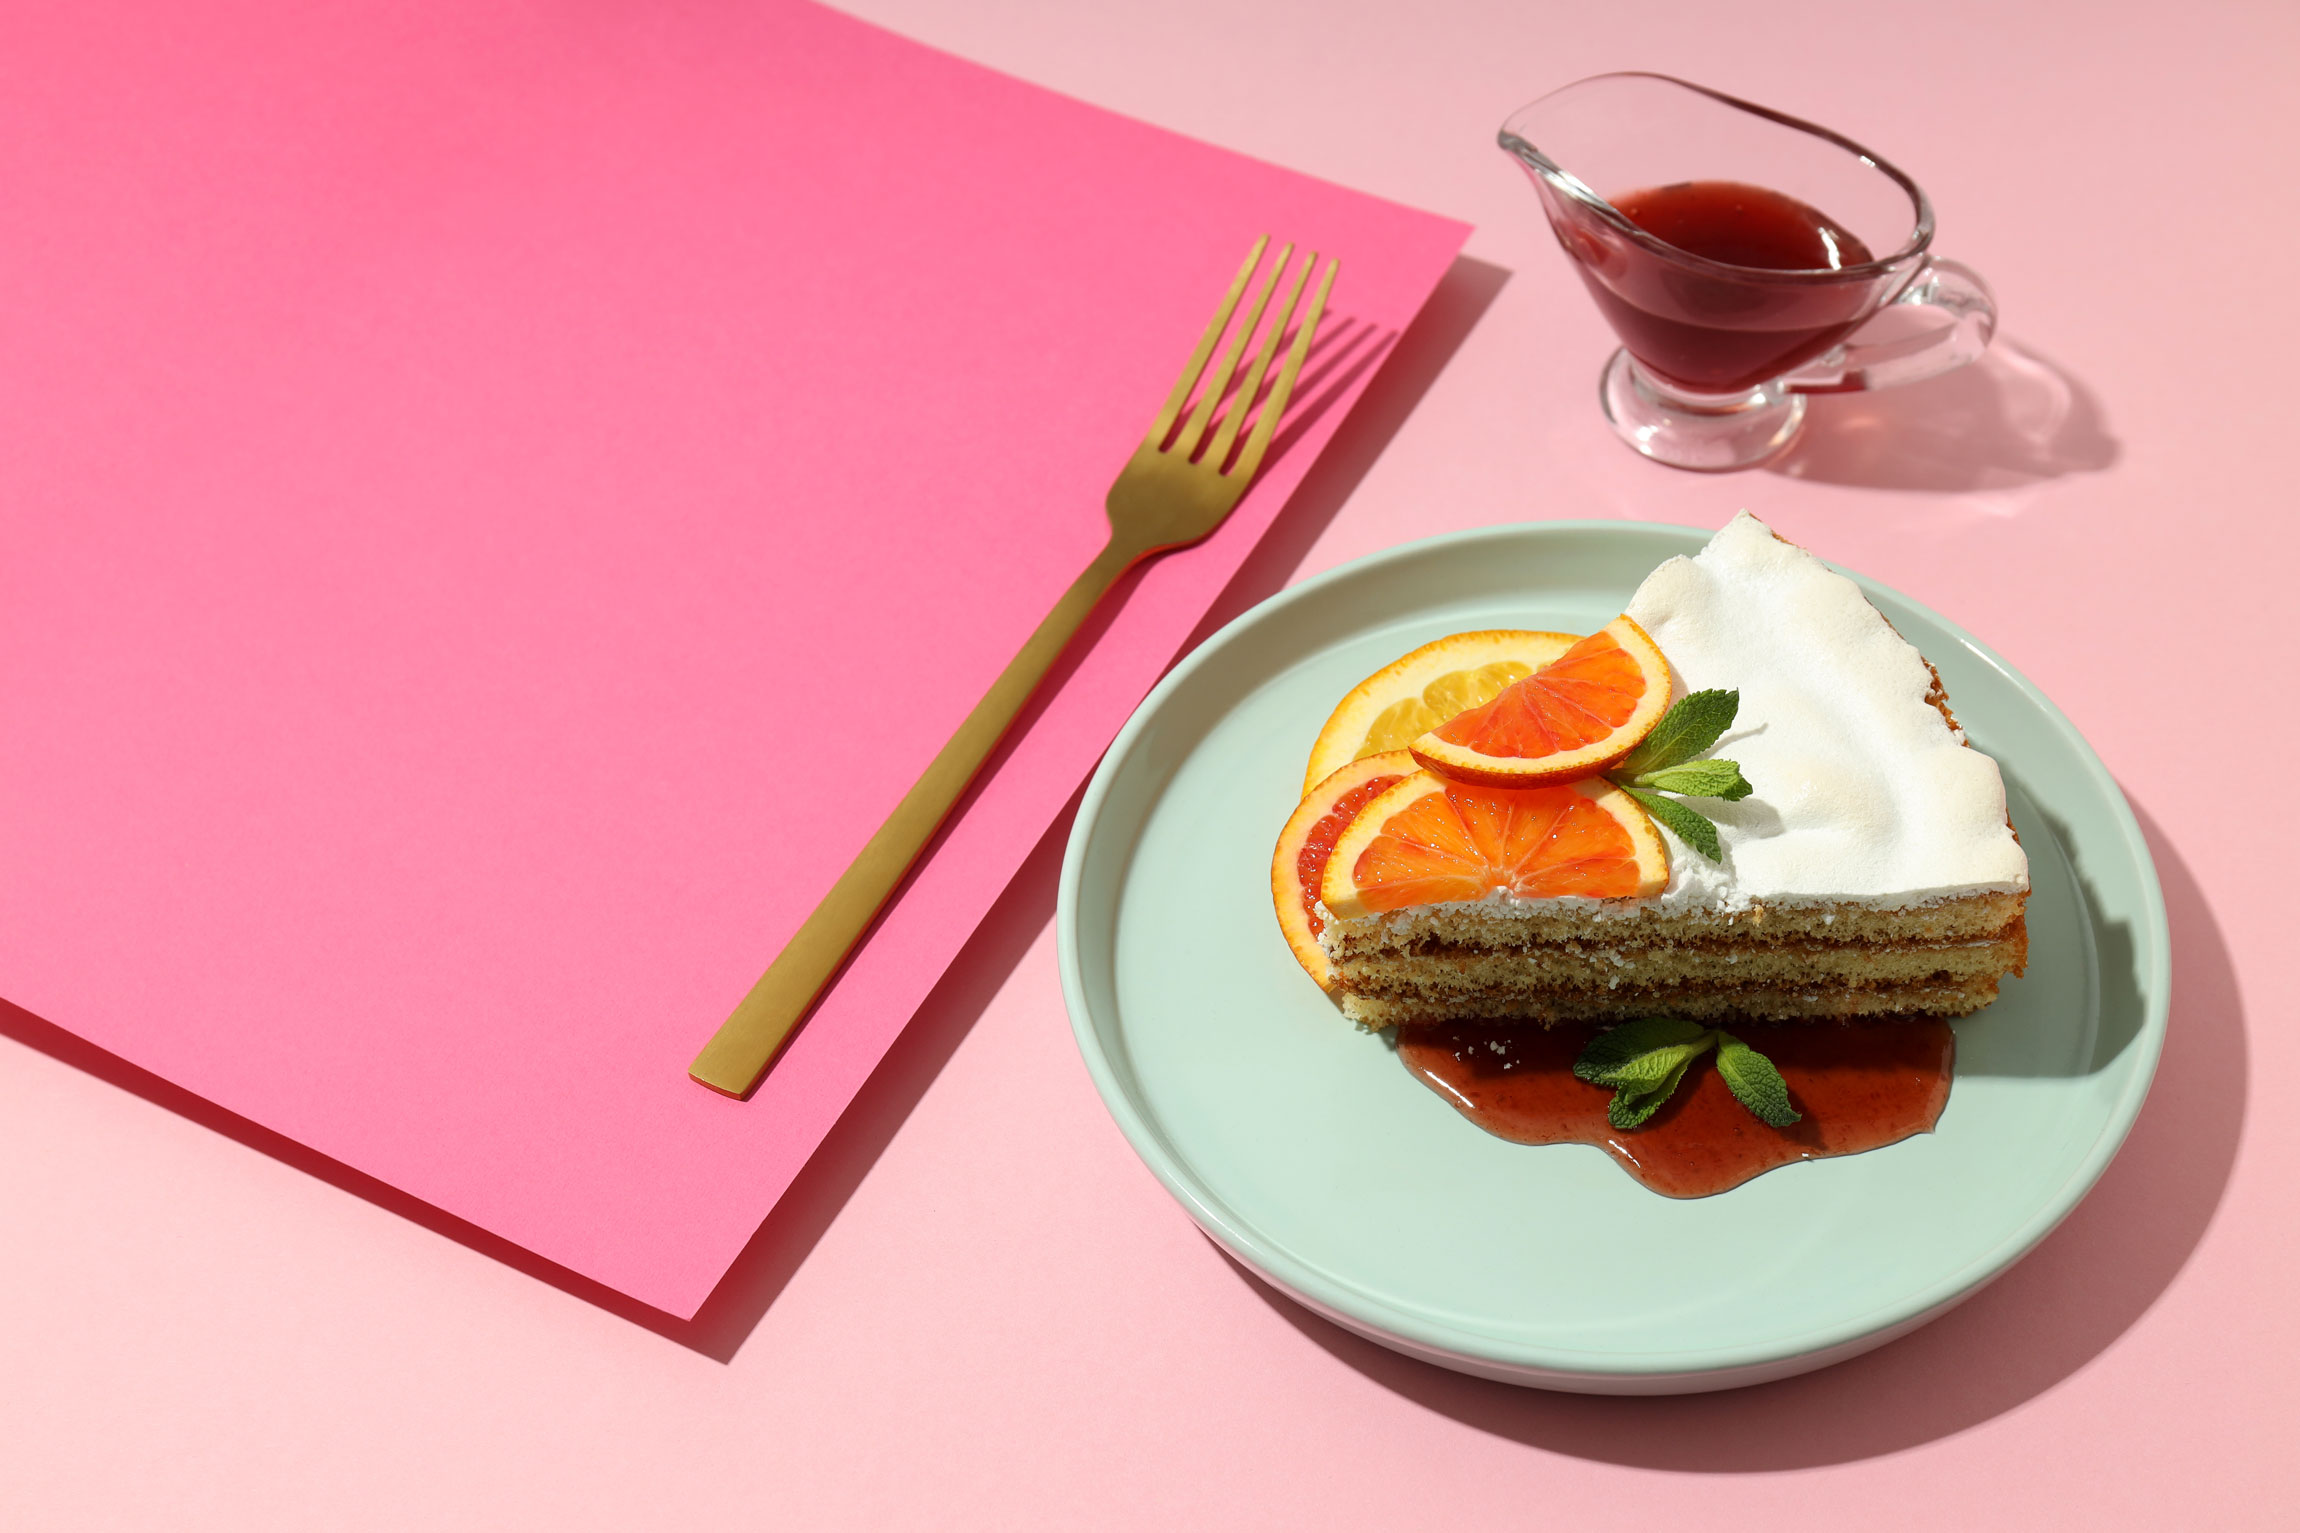 concept-of-tasty-dessert-with-meringue-pie-with-ci-2022-05-26-03-06-26-utc